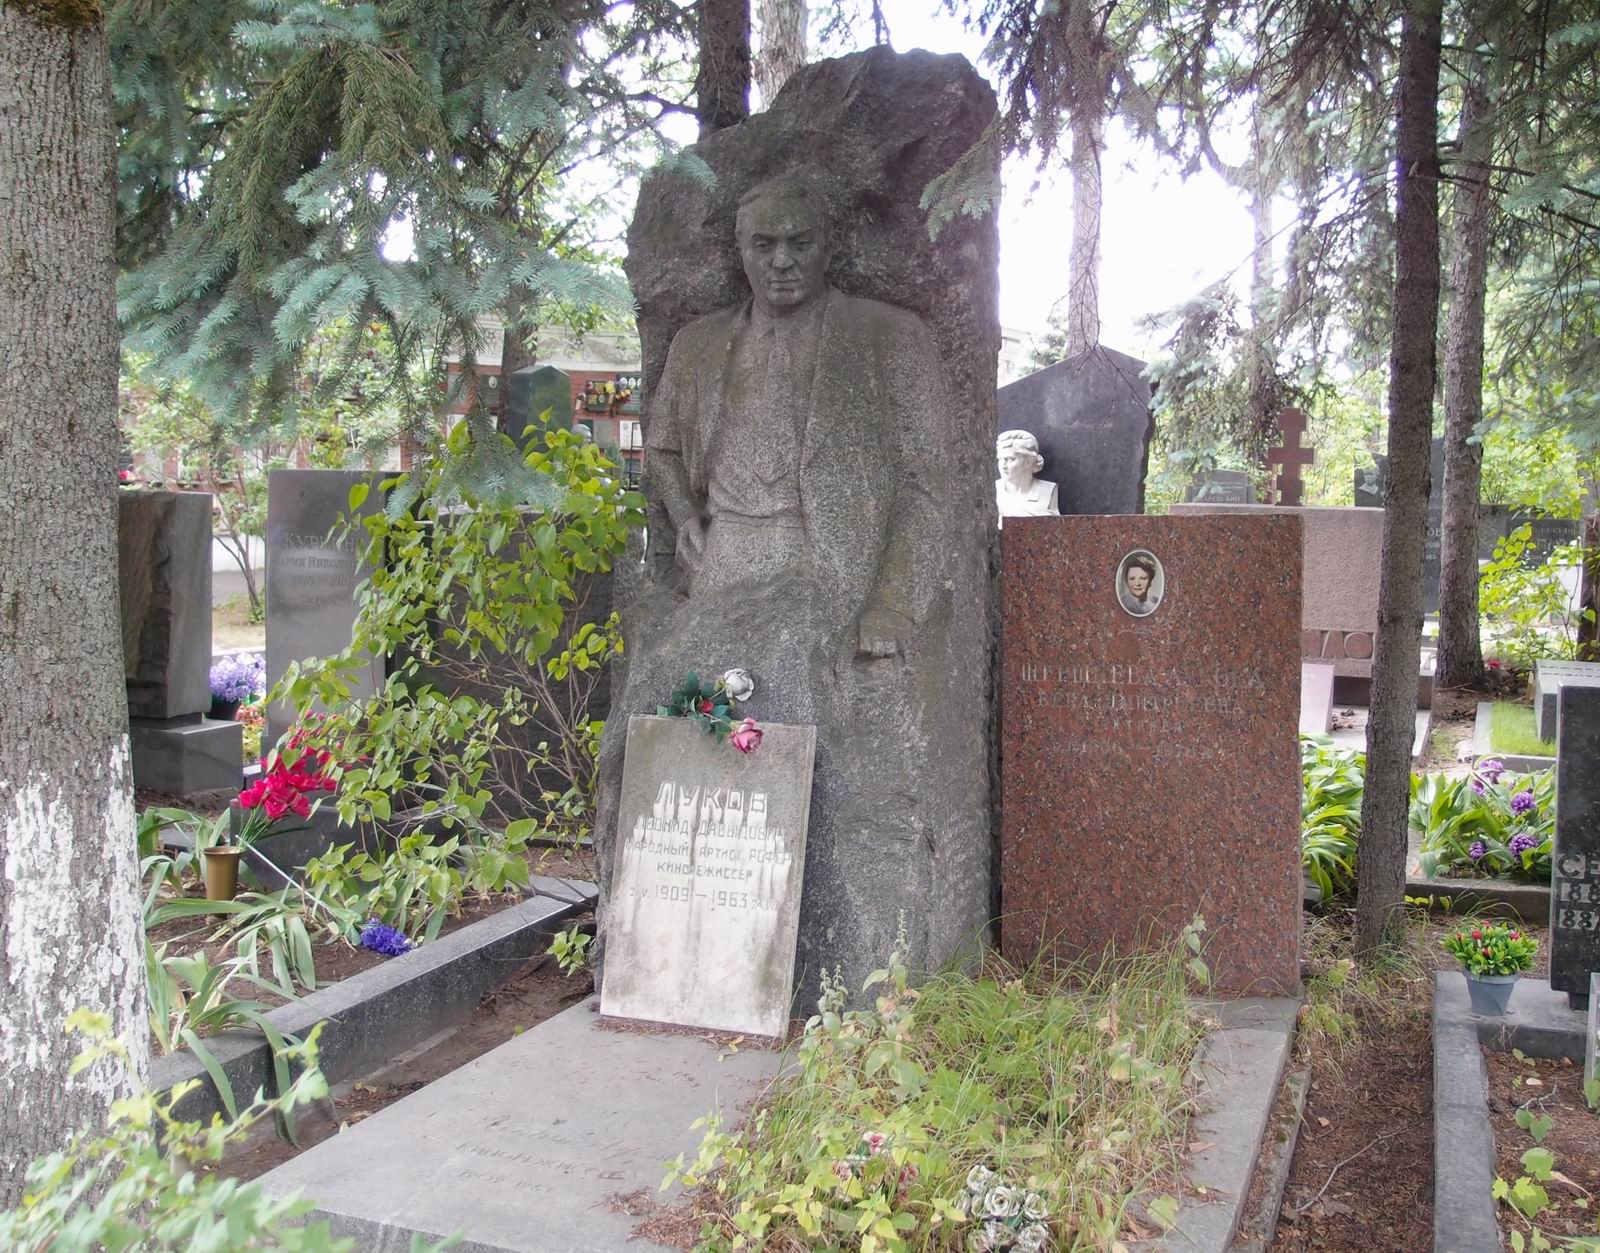 Памятник на могиле Лукова Л.Д. (1909-1963), ск. Н.Рудько, арх. И.Покровский, Б.Тхор, на Новодевичьем кладбище (8-28-7). Нажмите левую кнопку мыши чтобы увидеть фрагмент памятника.